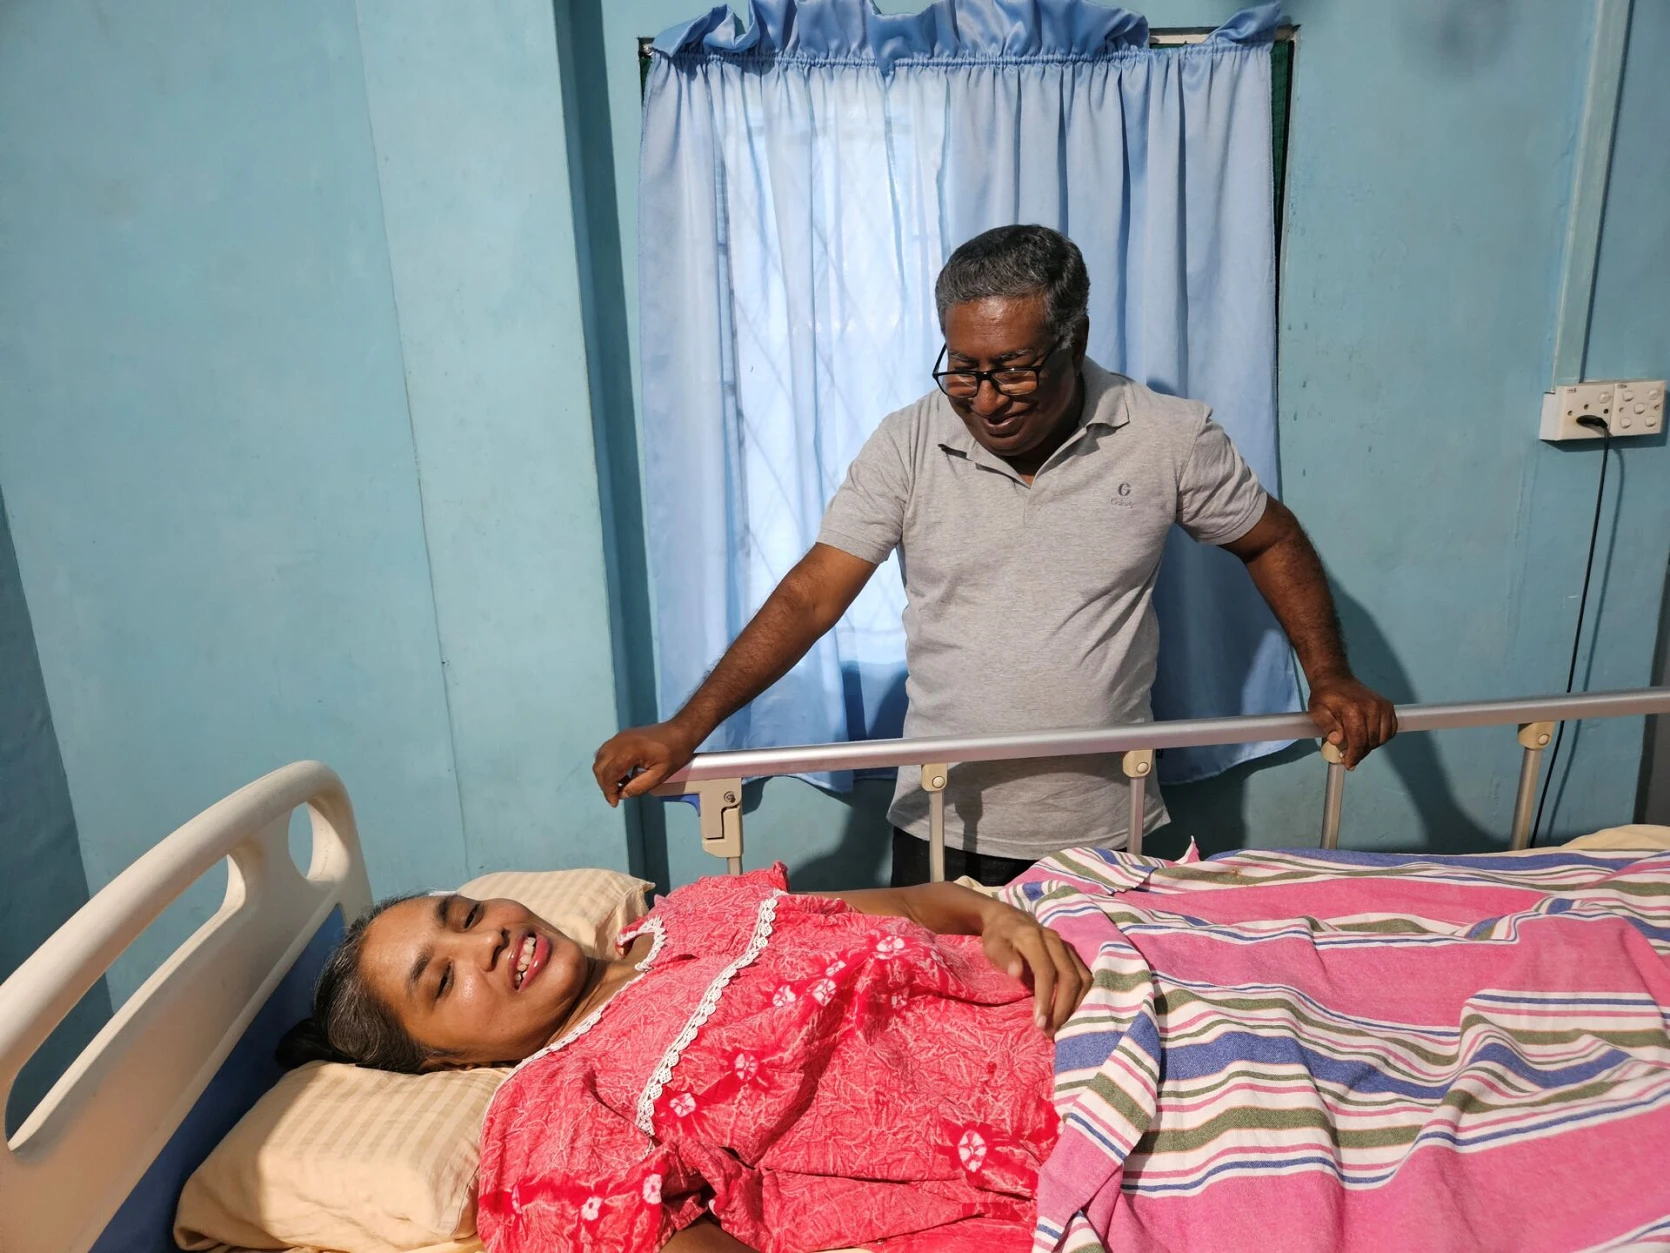 Anulekha sourit un instant. Son mari Cheliyan s’occupe avec amour de sa femme, invalide depuis l’attentat il y a cinq ans. csi